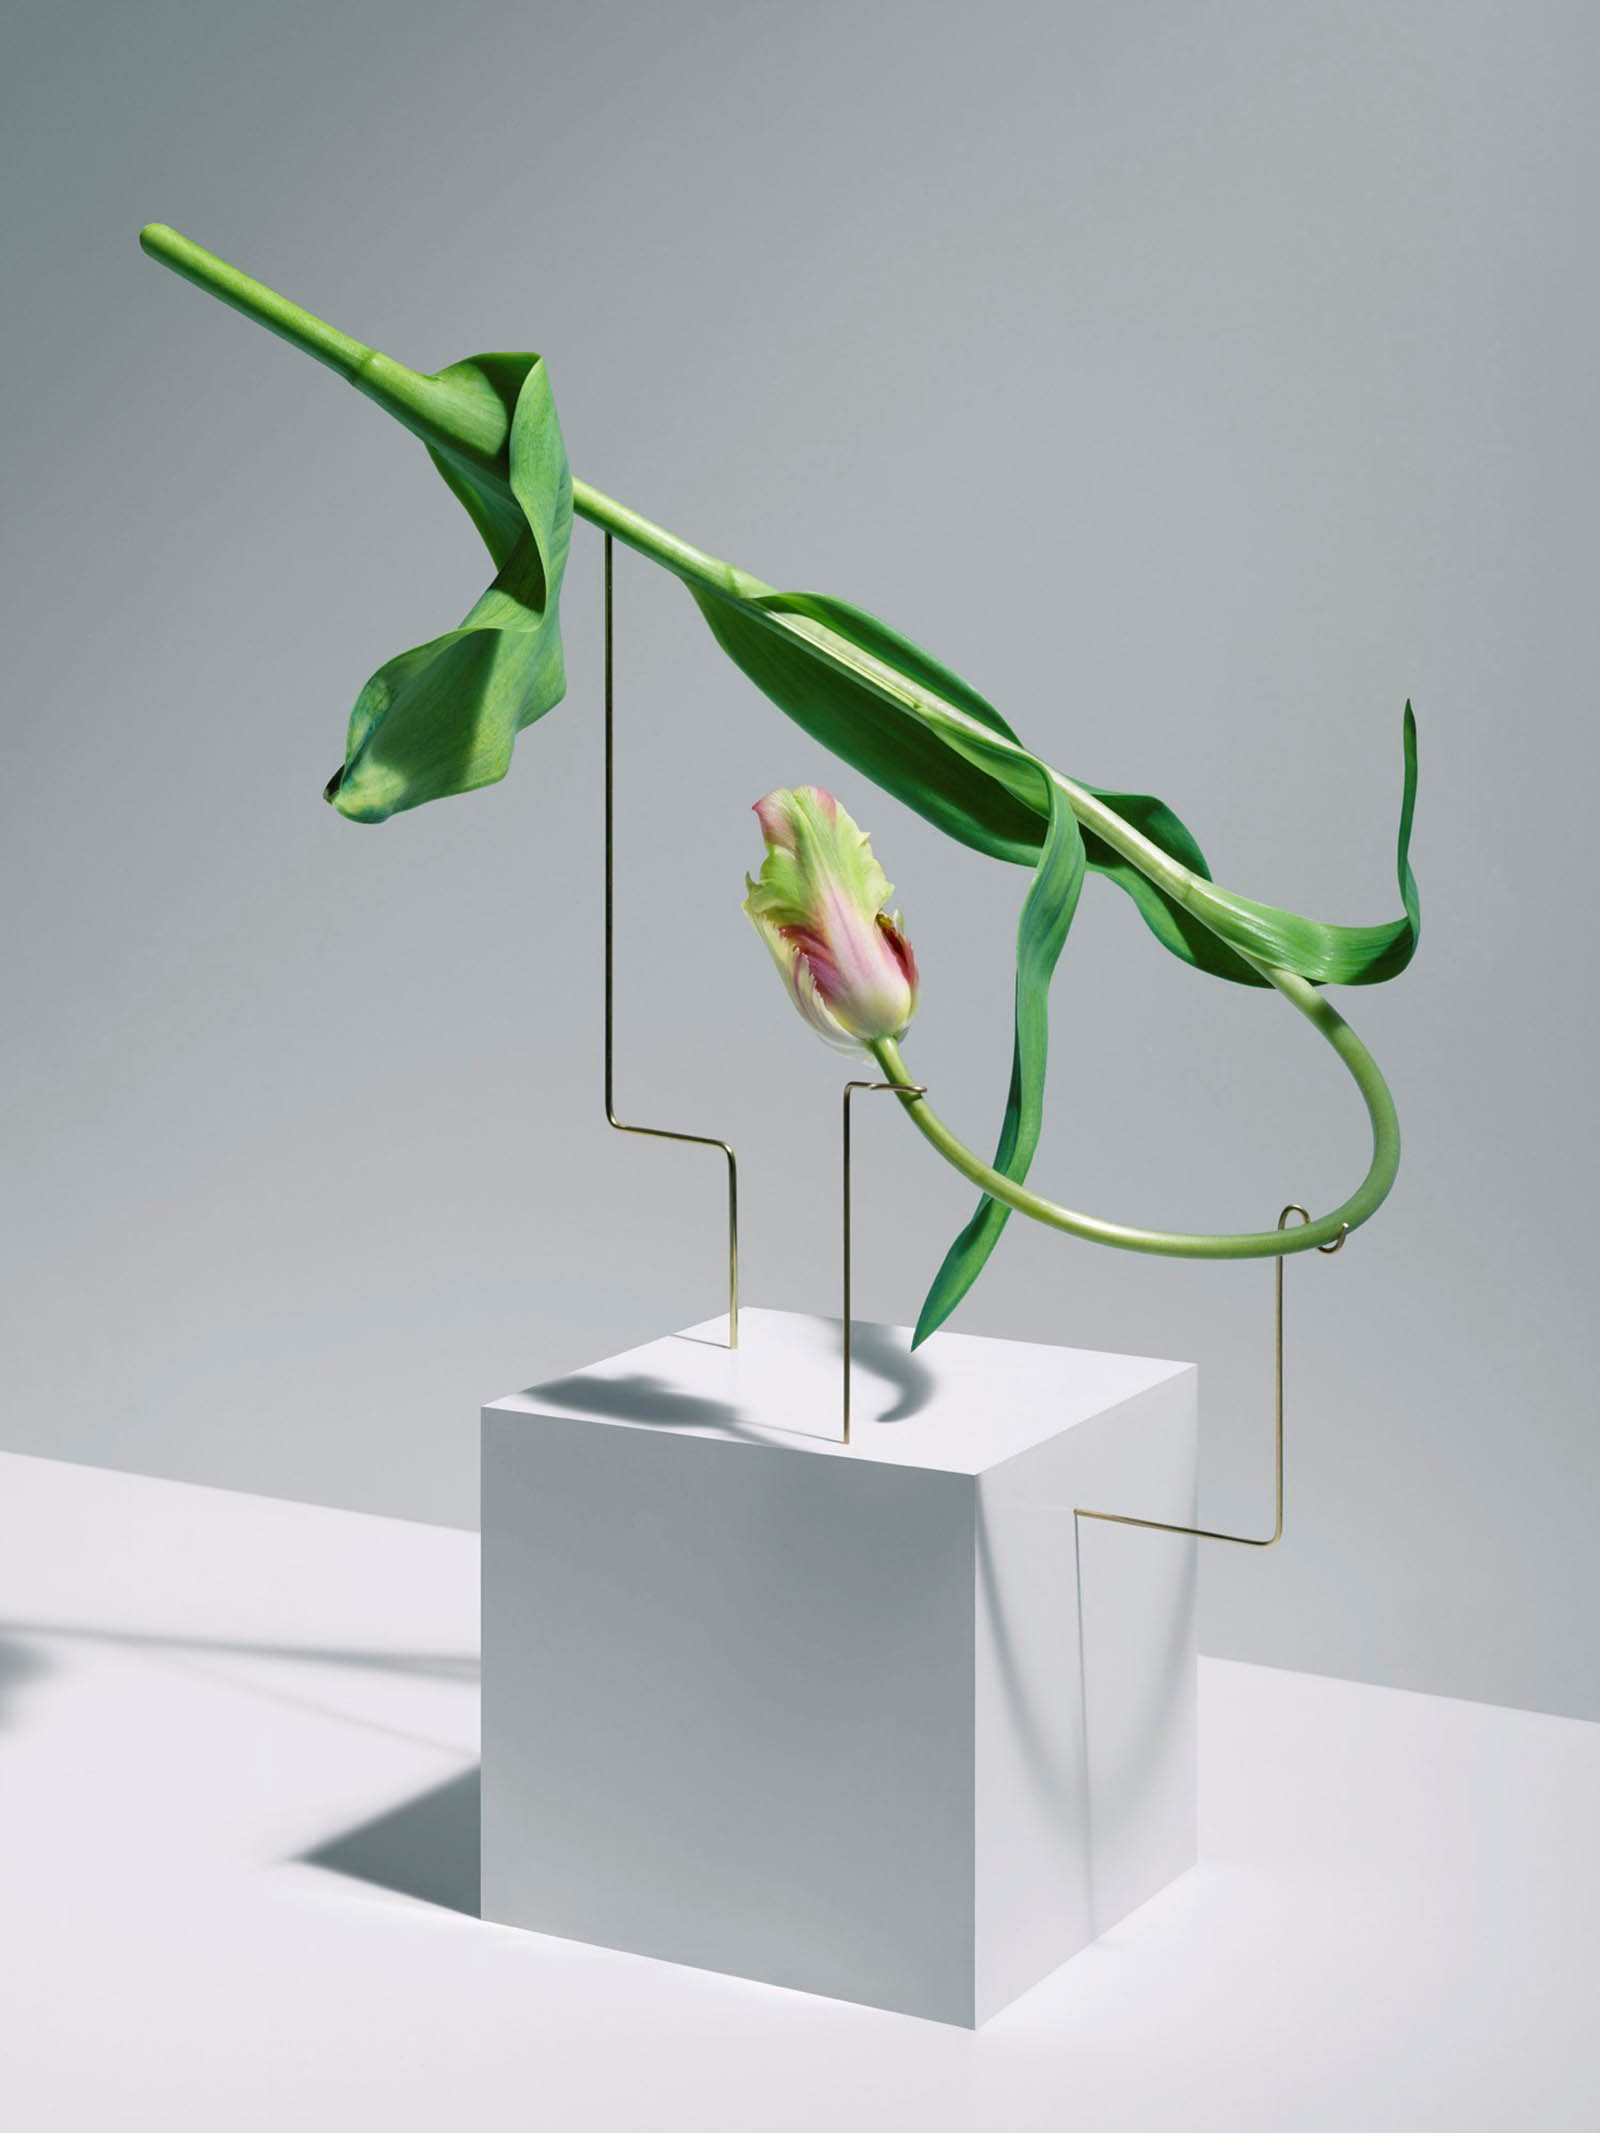 serie postures, los tulipanes en movimiento de Carl Keiner